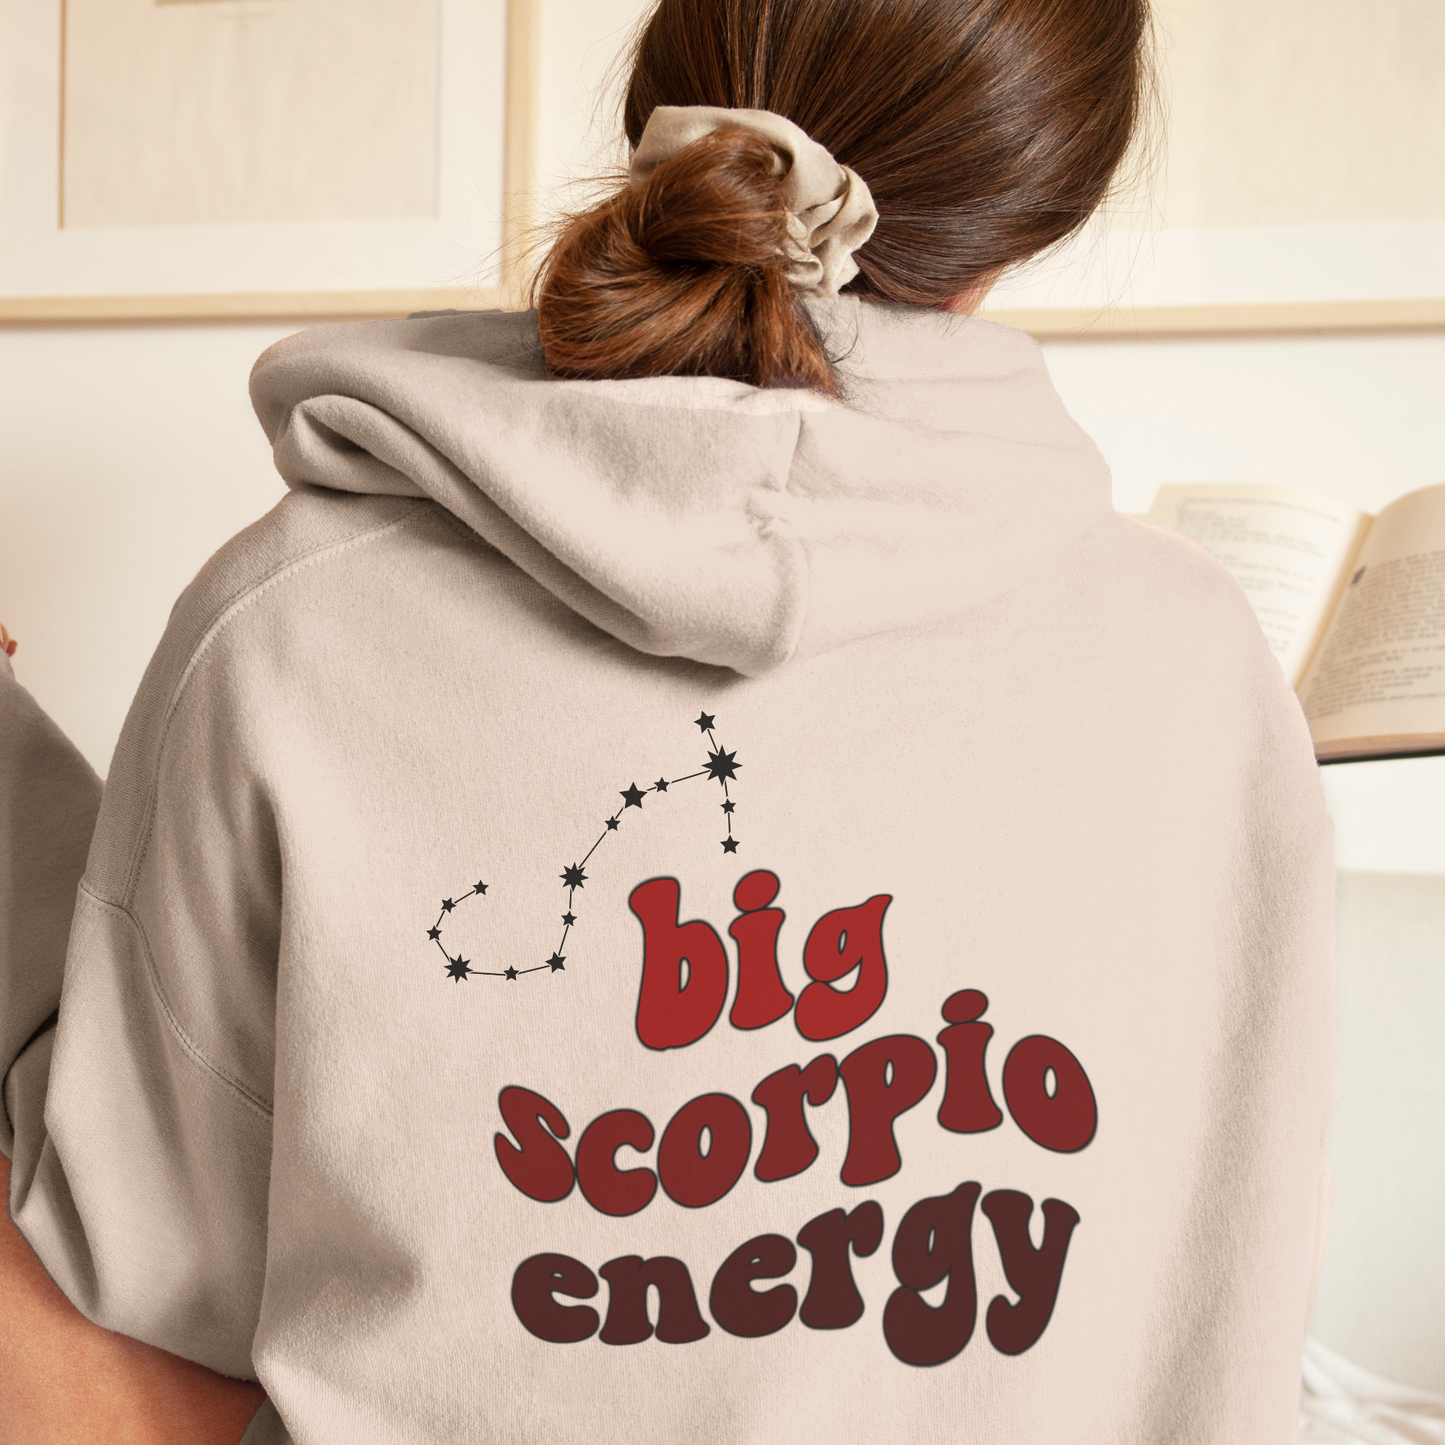 Big Scorpio Energy Hoodie, Scorpio Sweatshirt, Astrology lover gift, Zodiac sweatshirt, Christmas gift for Scorpio, Astrology hoodie